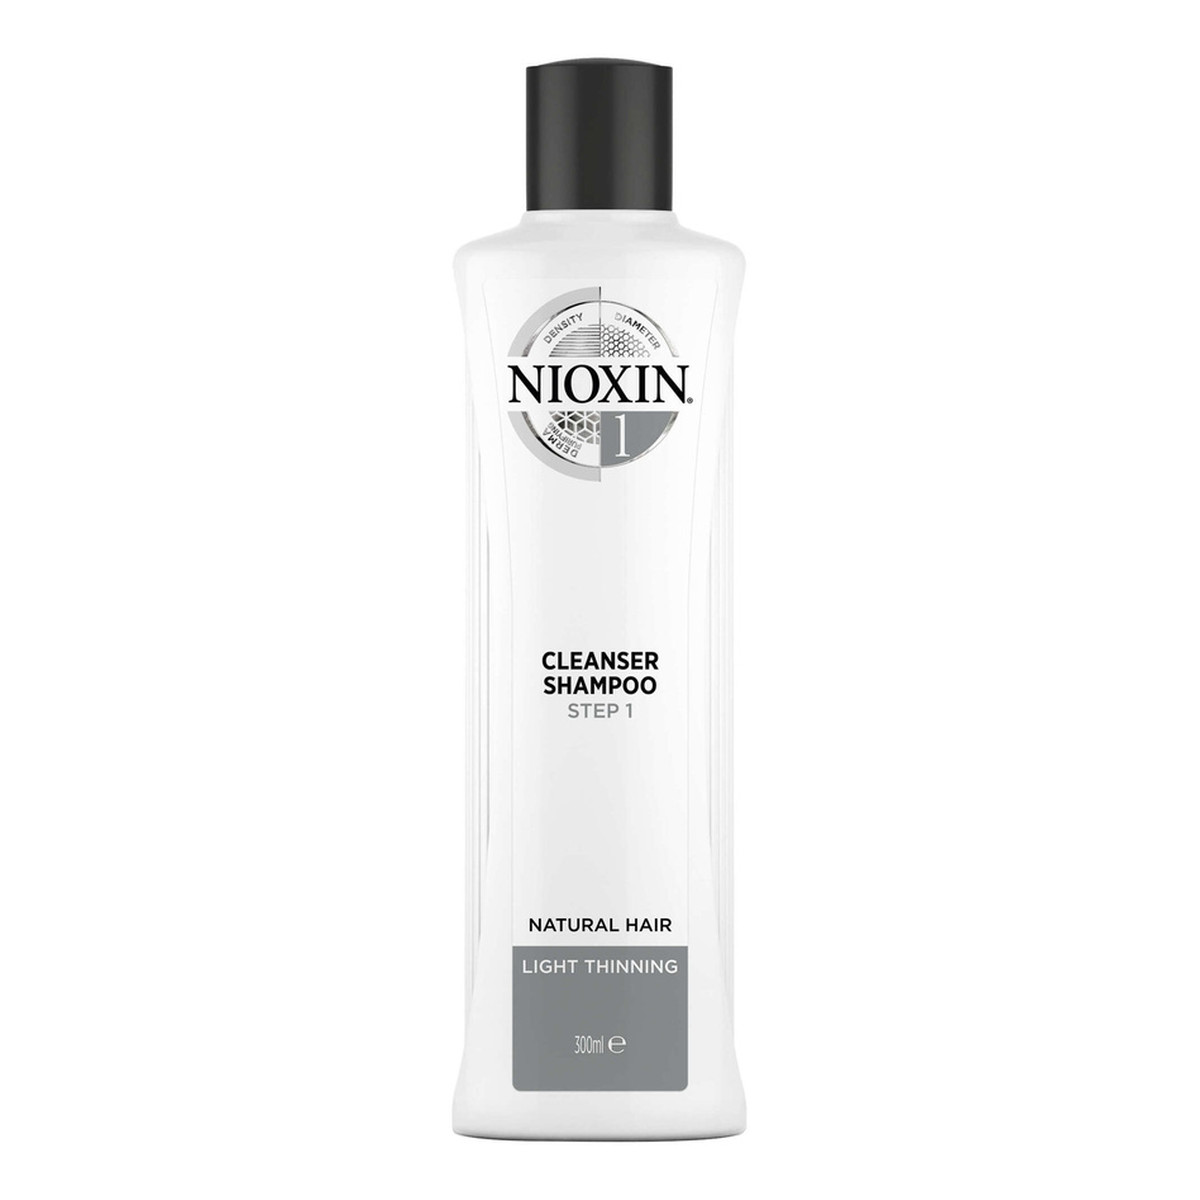 Nioxin System 1 cleanser shampoo oczyszczający szampon do włosów normalnych lekko przerzedzonych 300ml